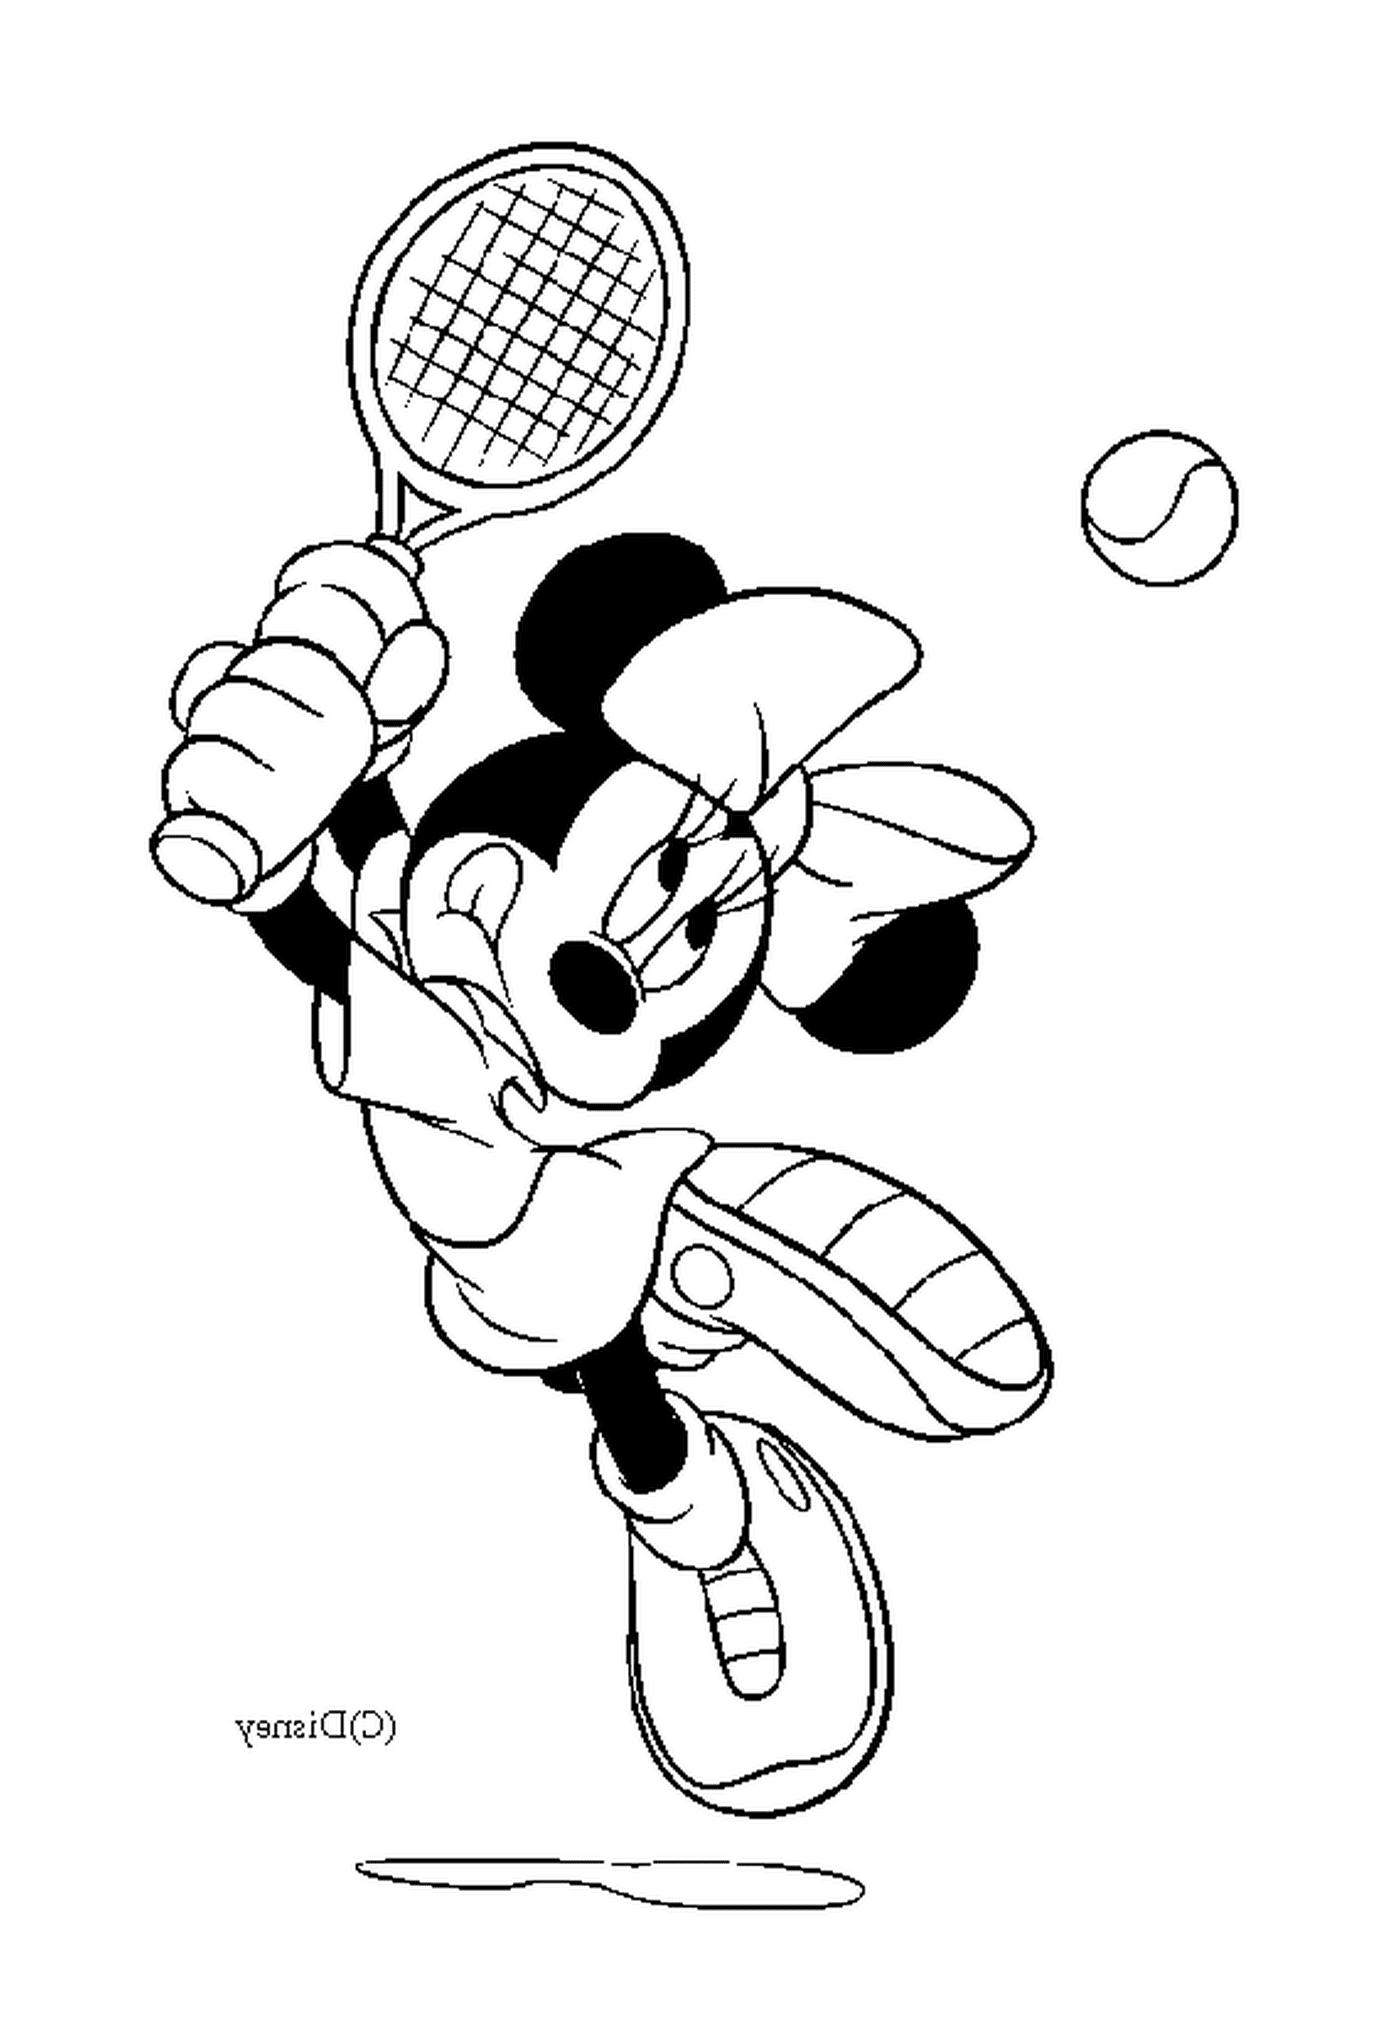  Minnie plays tennis 